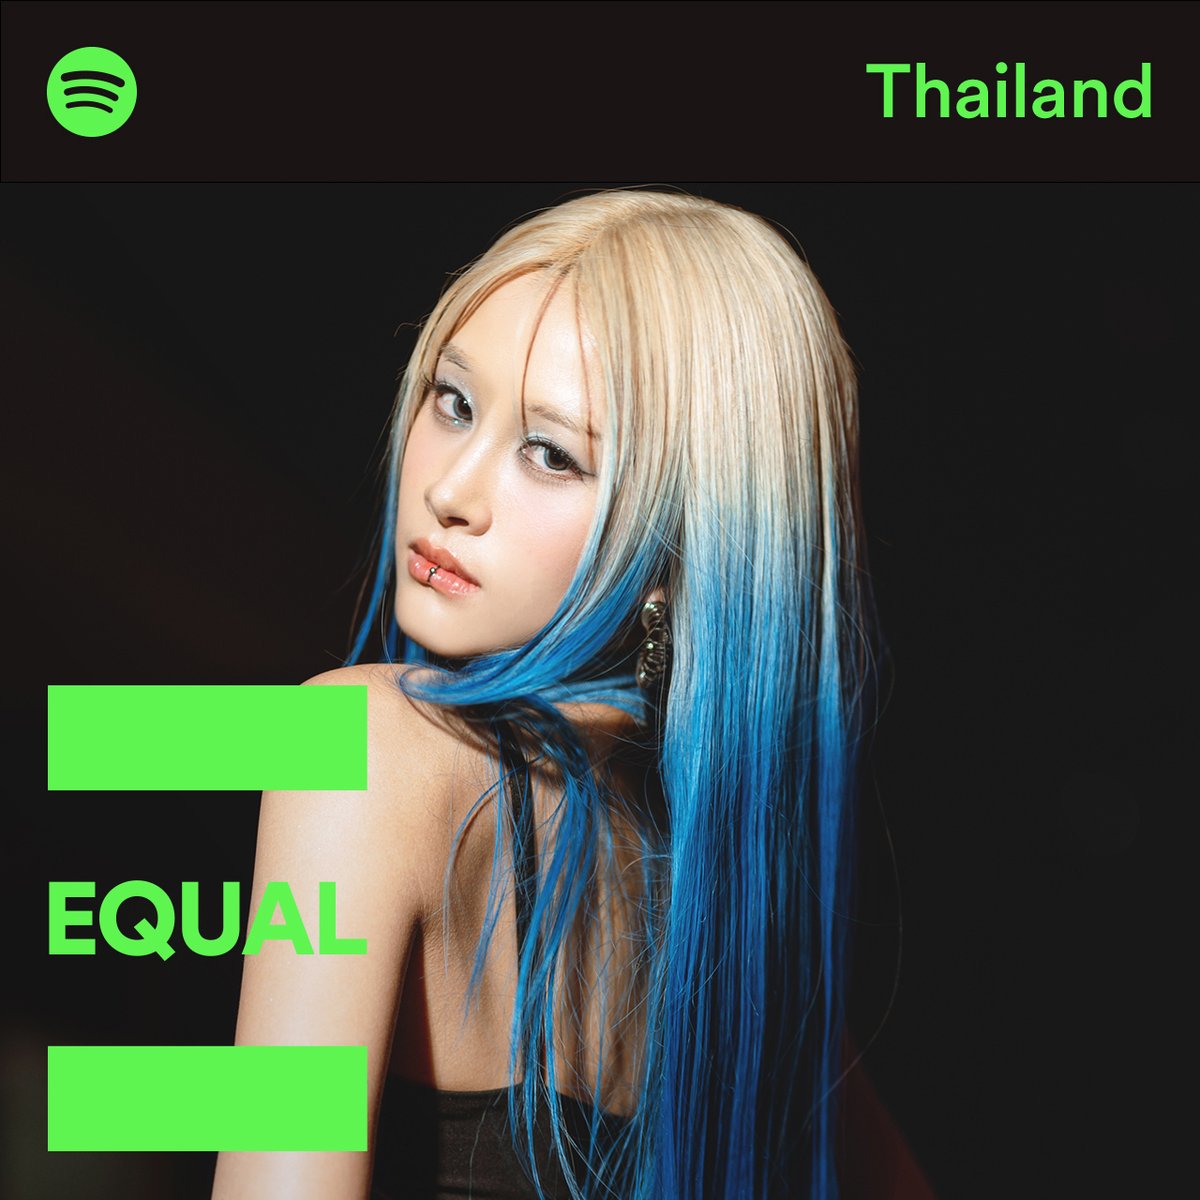 ไม่ฟังตอนนี้ แล้วจะฟังตอนไหน? ก็เพลงใหม่ ‘Now Or Never’ จาก #Fyeqoodgurl ในเพลย์ลิสต์ EQUAL Thailand น่ะ มันเป้วมากคุณน้า ตัวแม่ ตัวมัม ทำดี ทำถึง!! ตามไปฟังกันได้เลย! 🤩 🔗🎧 ไปฟังเพลย์ลิสต์ Equal Thailand กันเลย! 🫶🏻 open.spotify.com/playlist/37i9d…